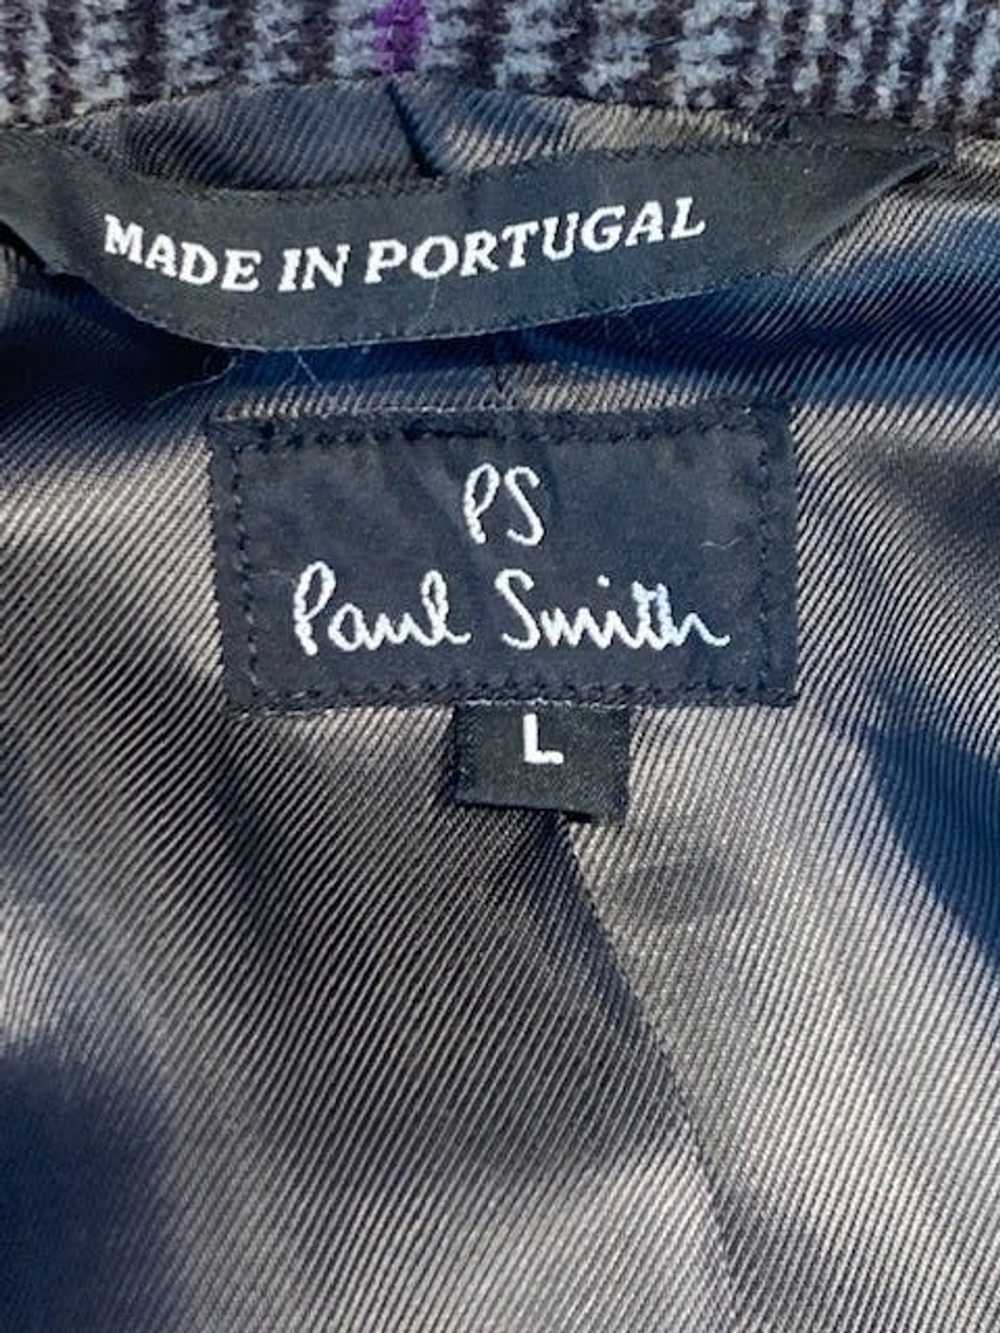 Paul Smith Wool/Polyurethane Pea Coat - image 5